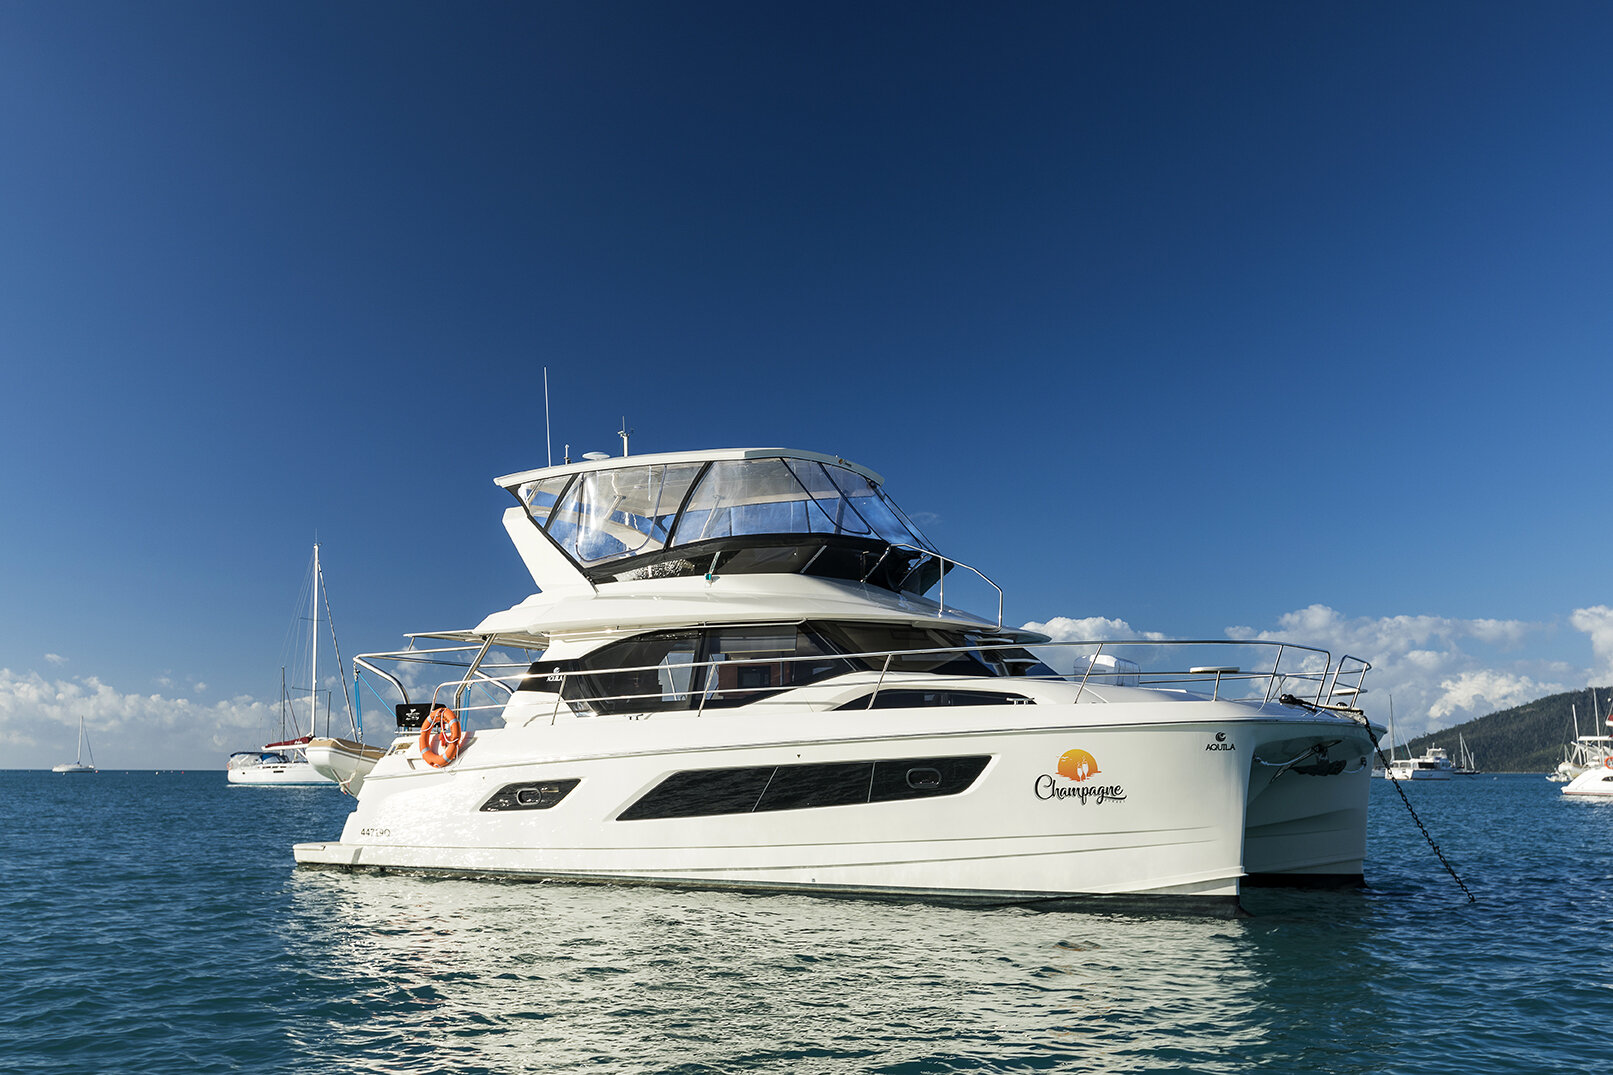 Champagne Sunset Aquila 443 Luxury Yachts Whitsundays Bareboating And Crewed Luxury Charters